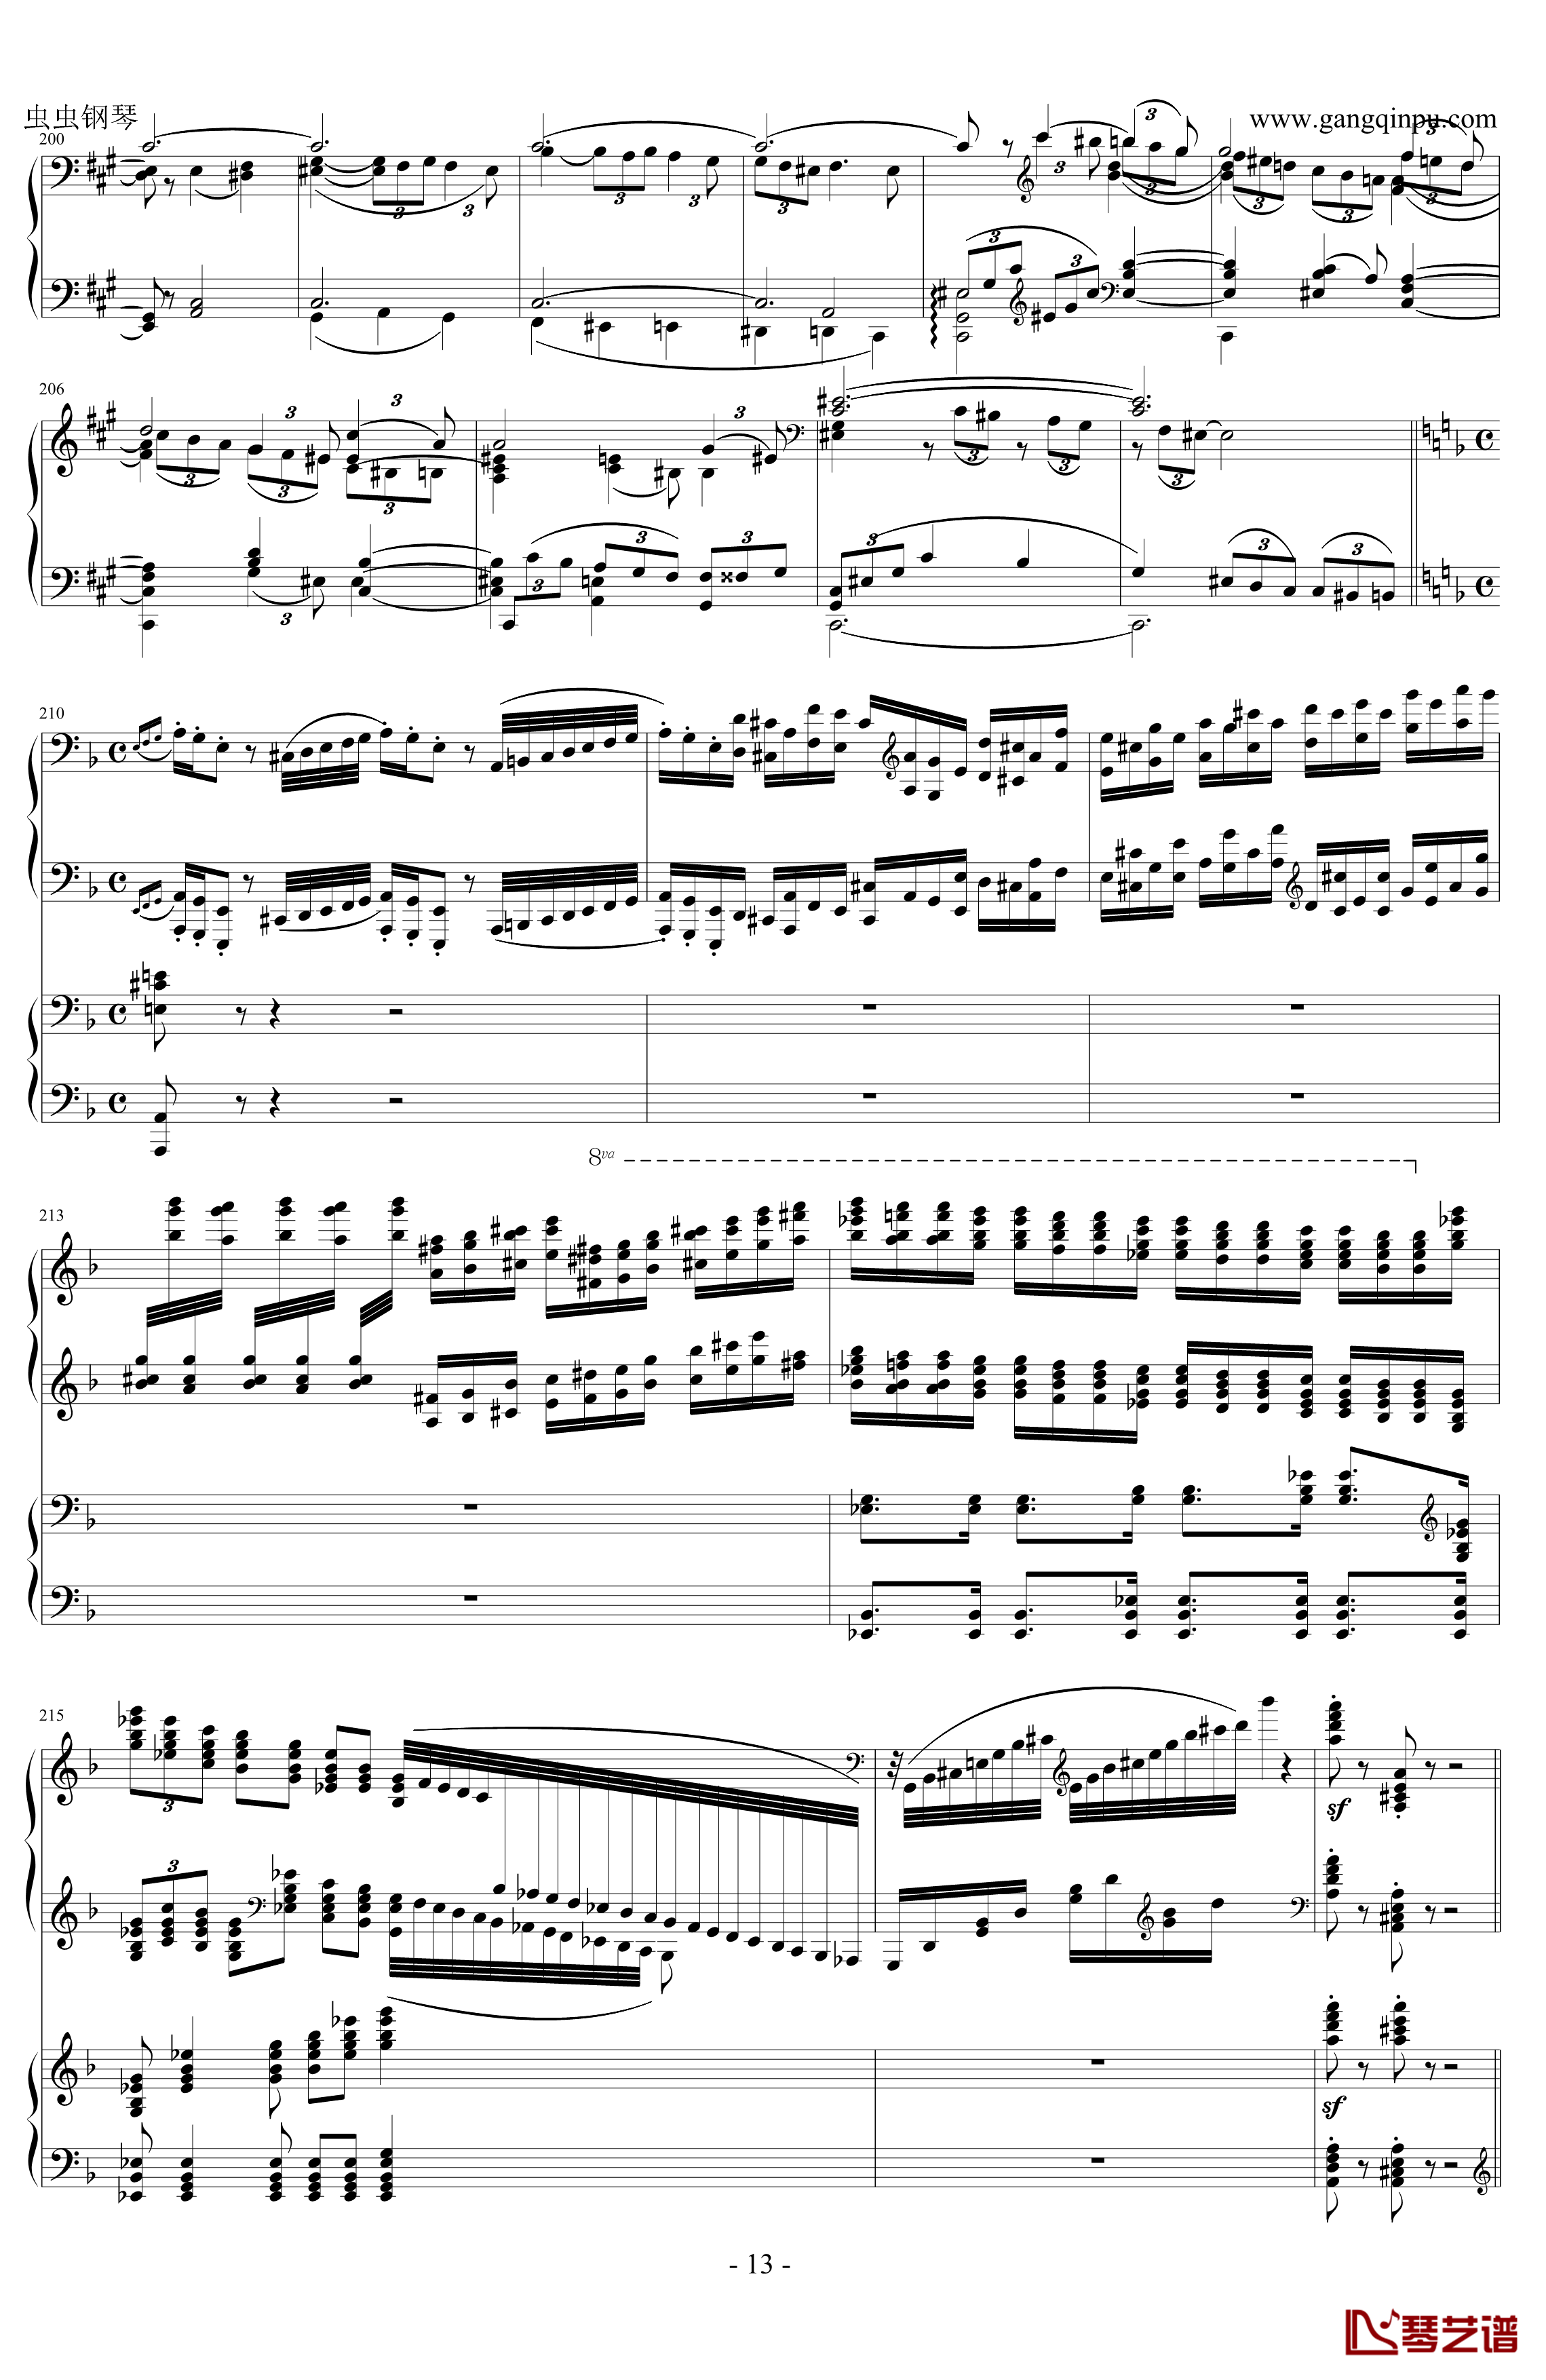 拉赫玛尼诺夫d小调第三钢琴协奏曲钢琴谱 第二乐章-拉赫马尼若夫13